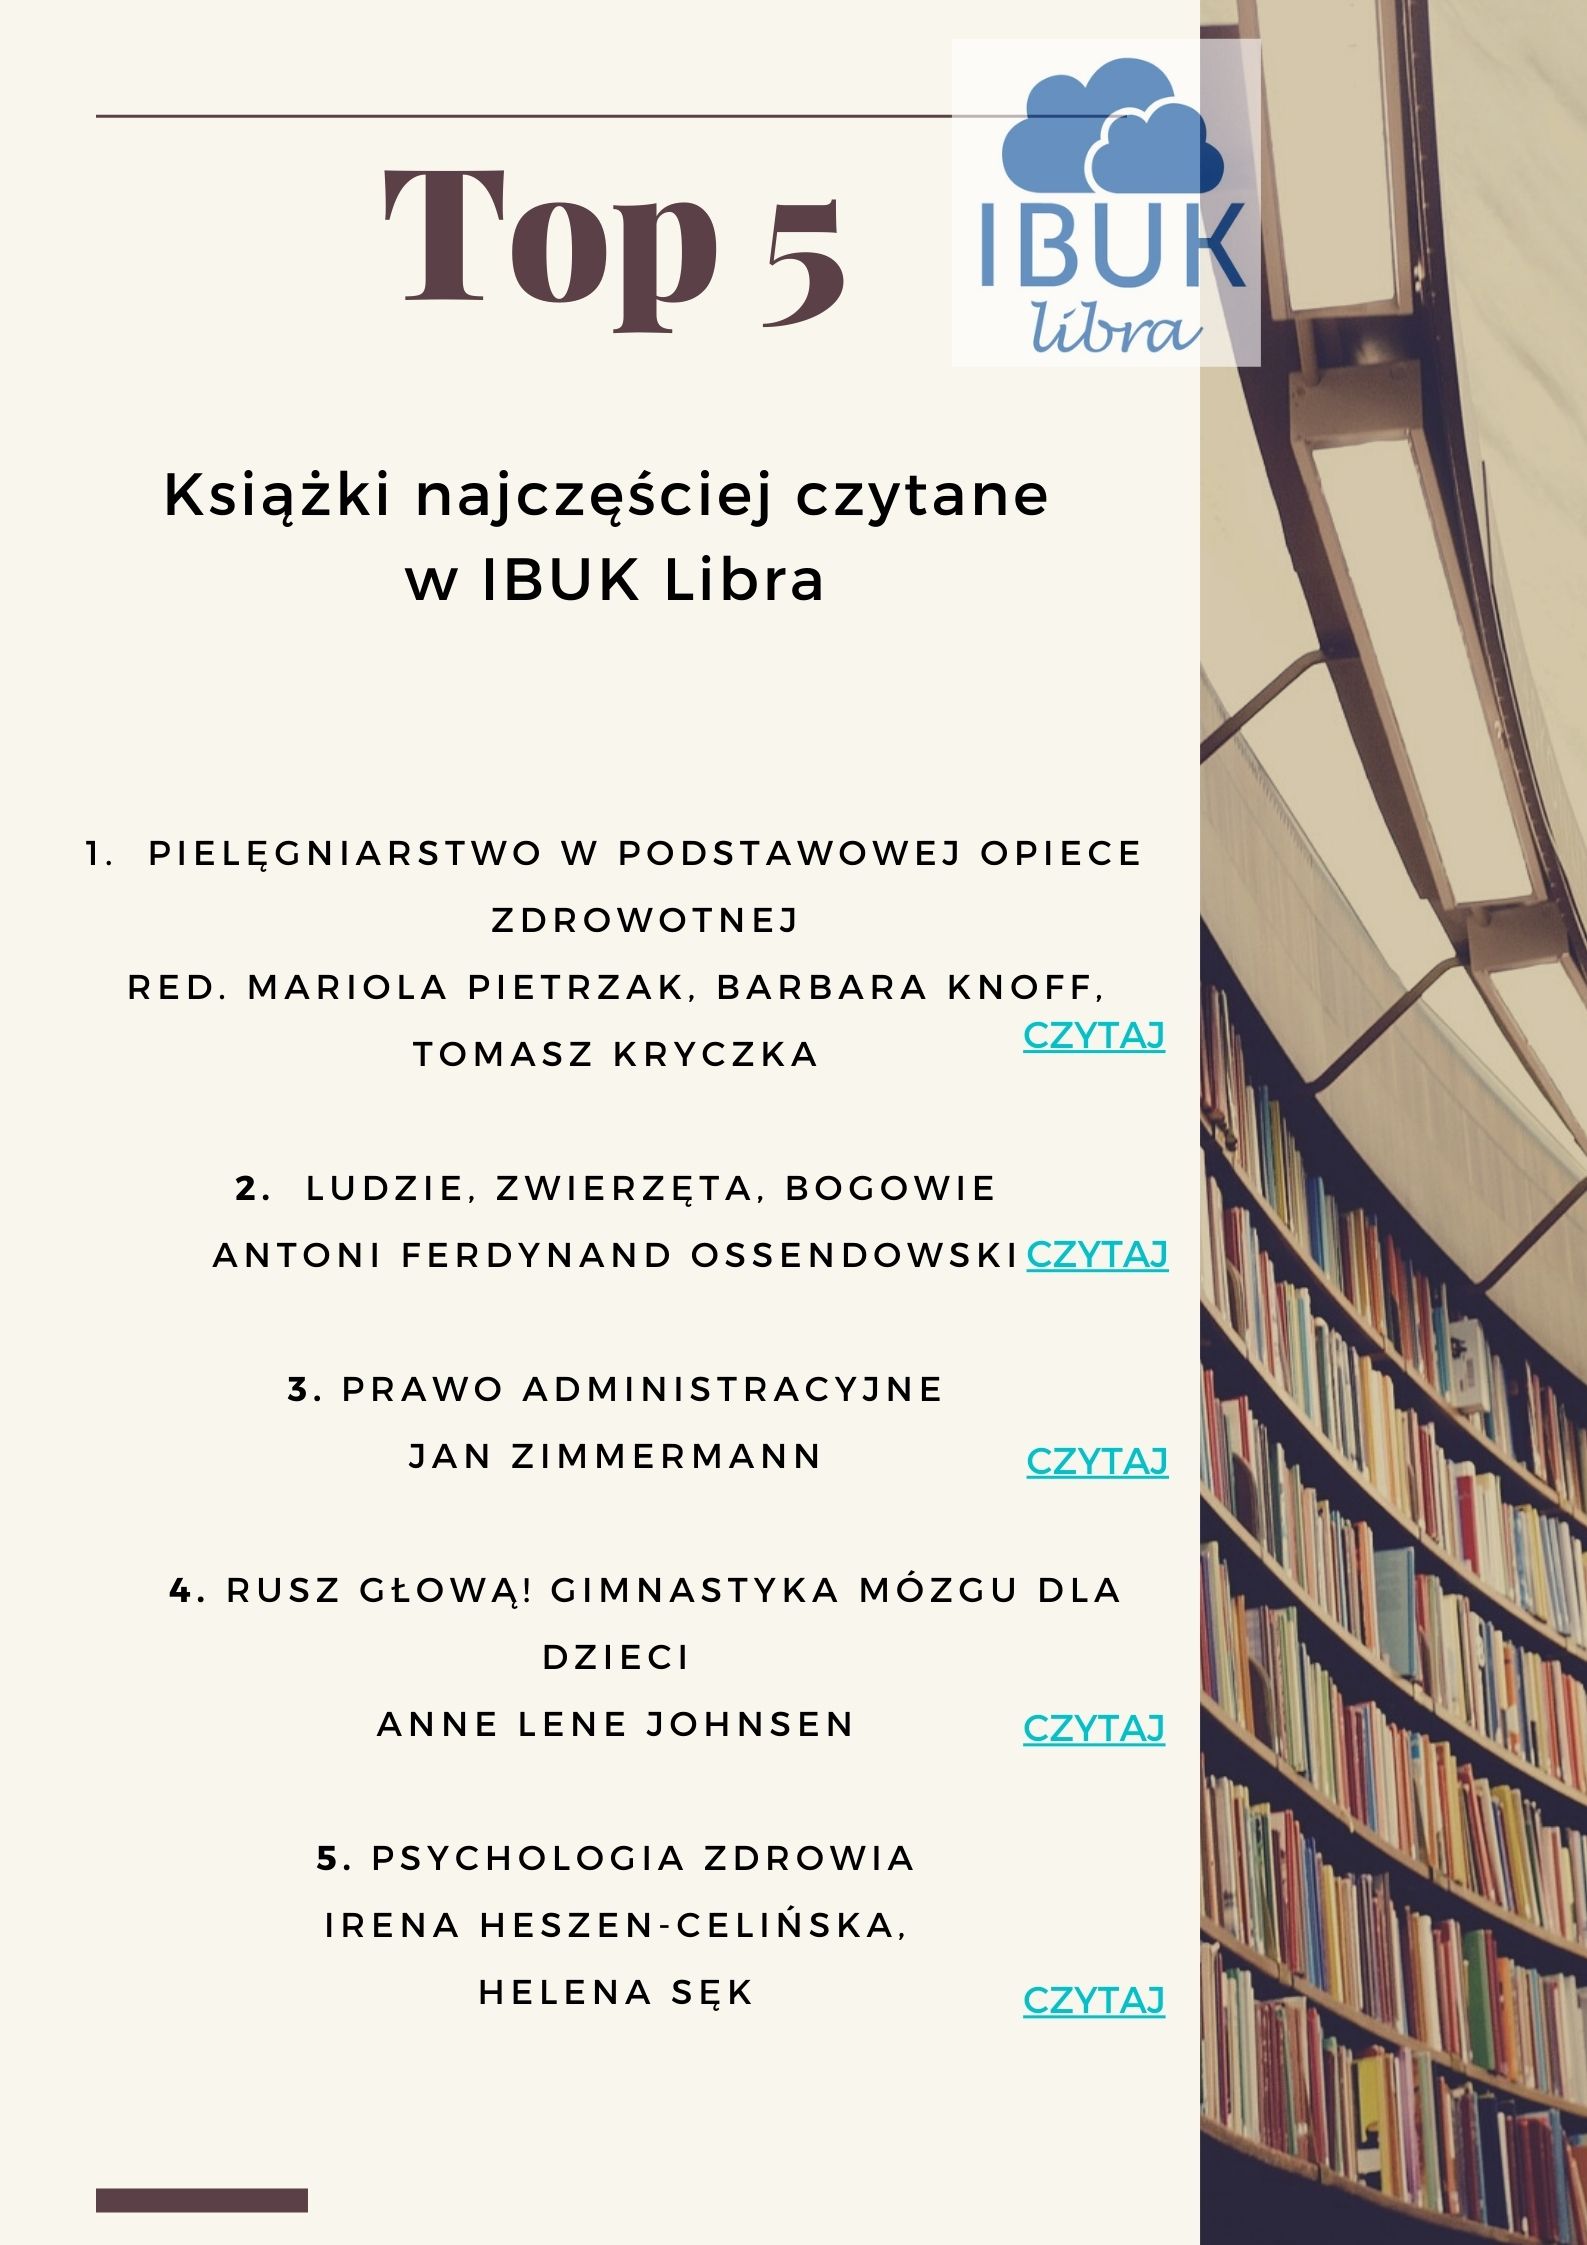 Plakat Top5 IBUK Libra.